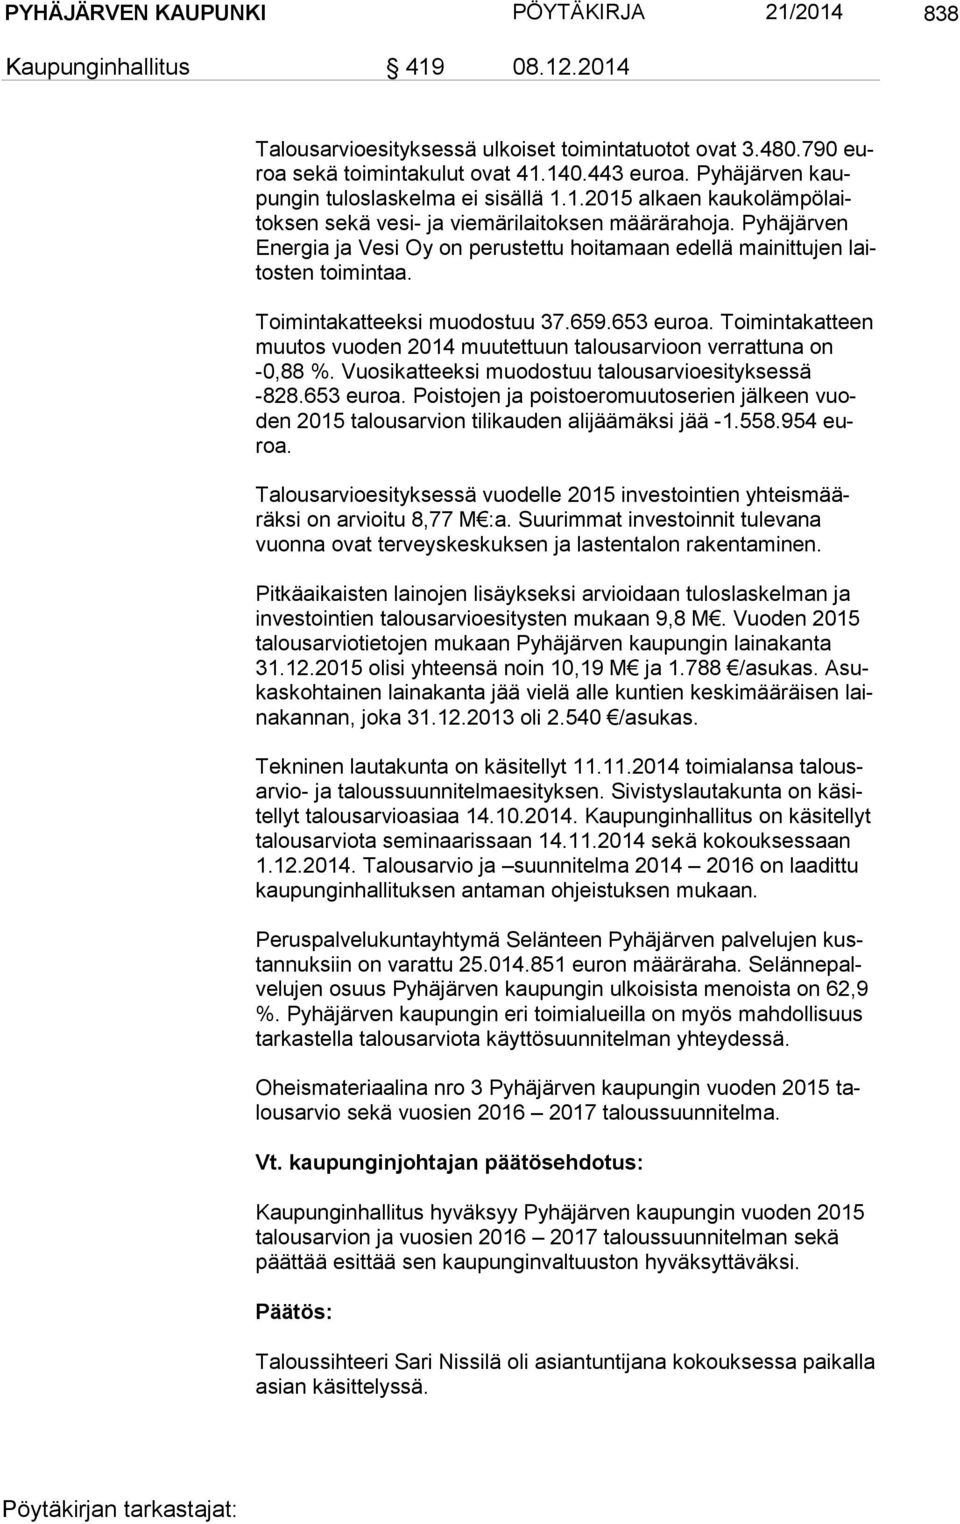 Pyhäjärven Ener gia ja Vesi Oy on perustettu hoitamaan edellä mainittujen laitos ten toimintaa. Toimintakatteeksi muodostuu 37.659.653 euroa.